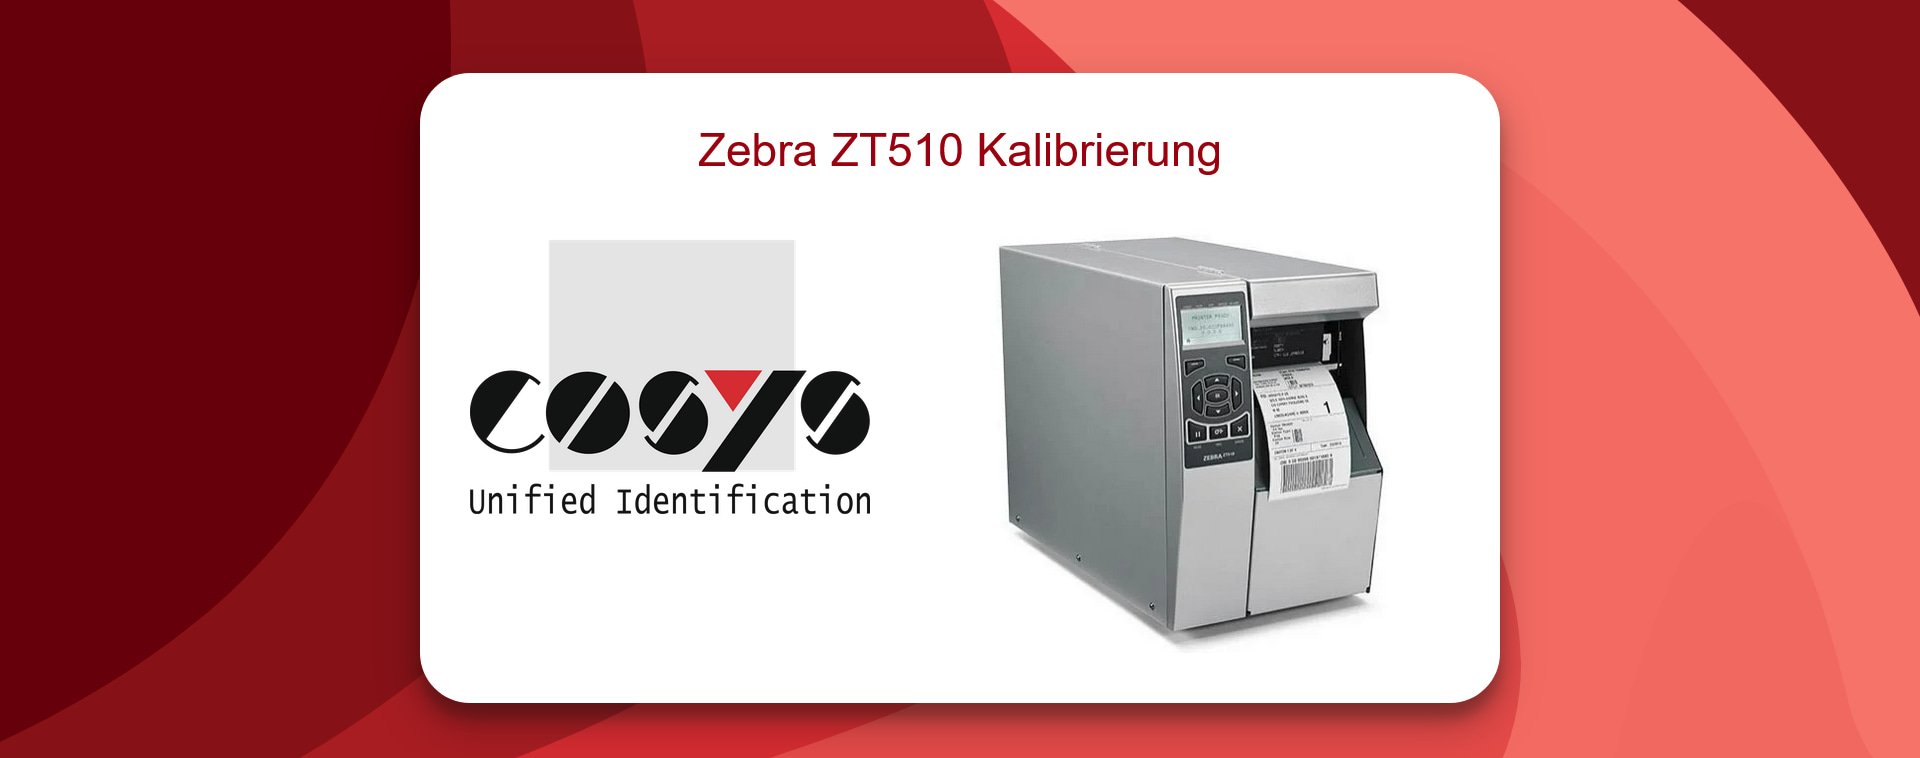 Support: Zebra ZT510 Druckerkalibrierung